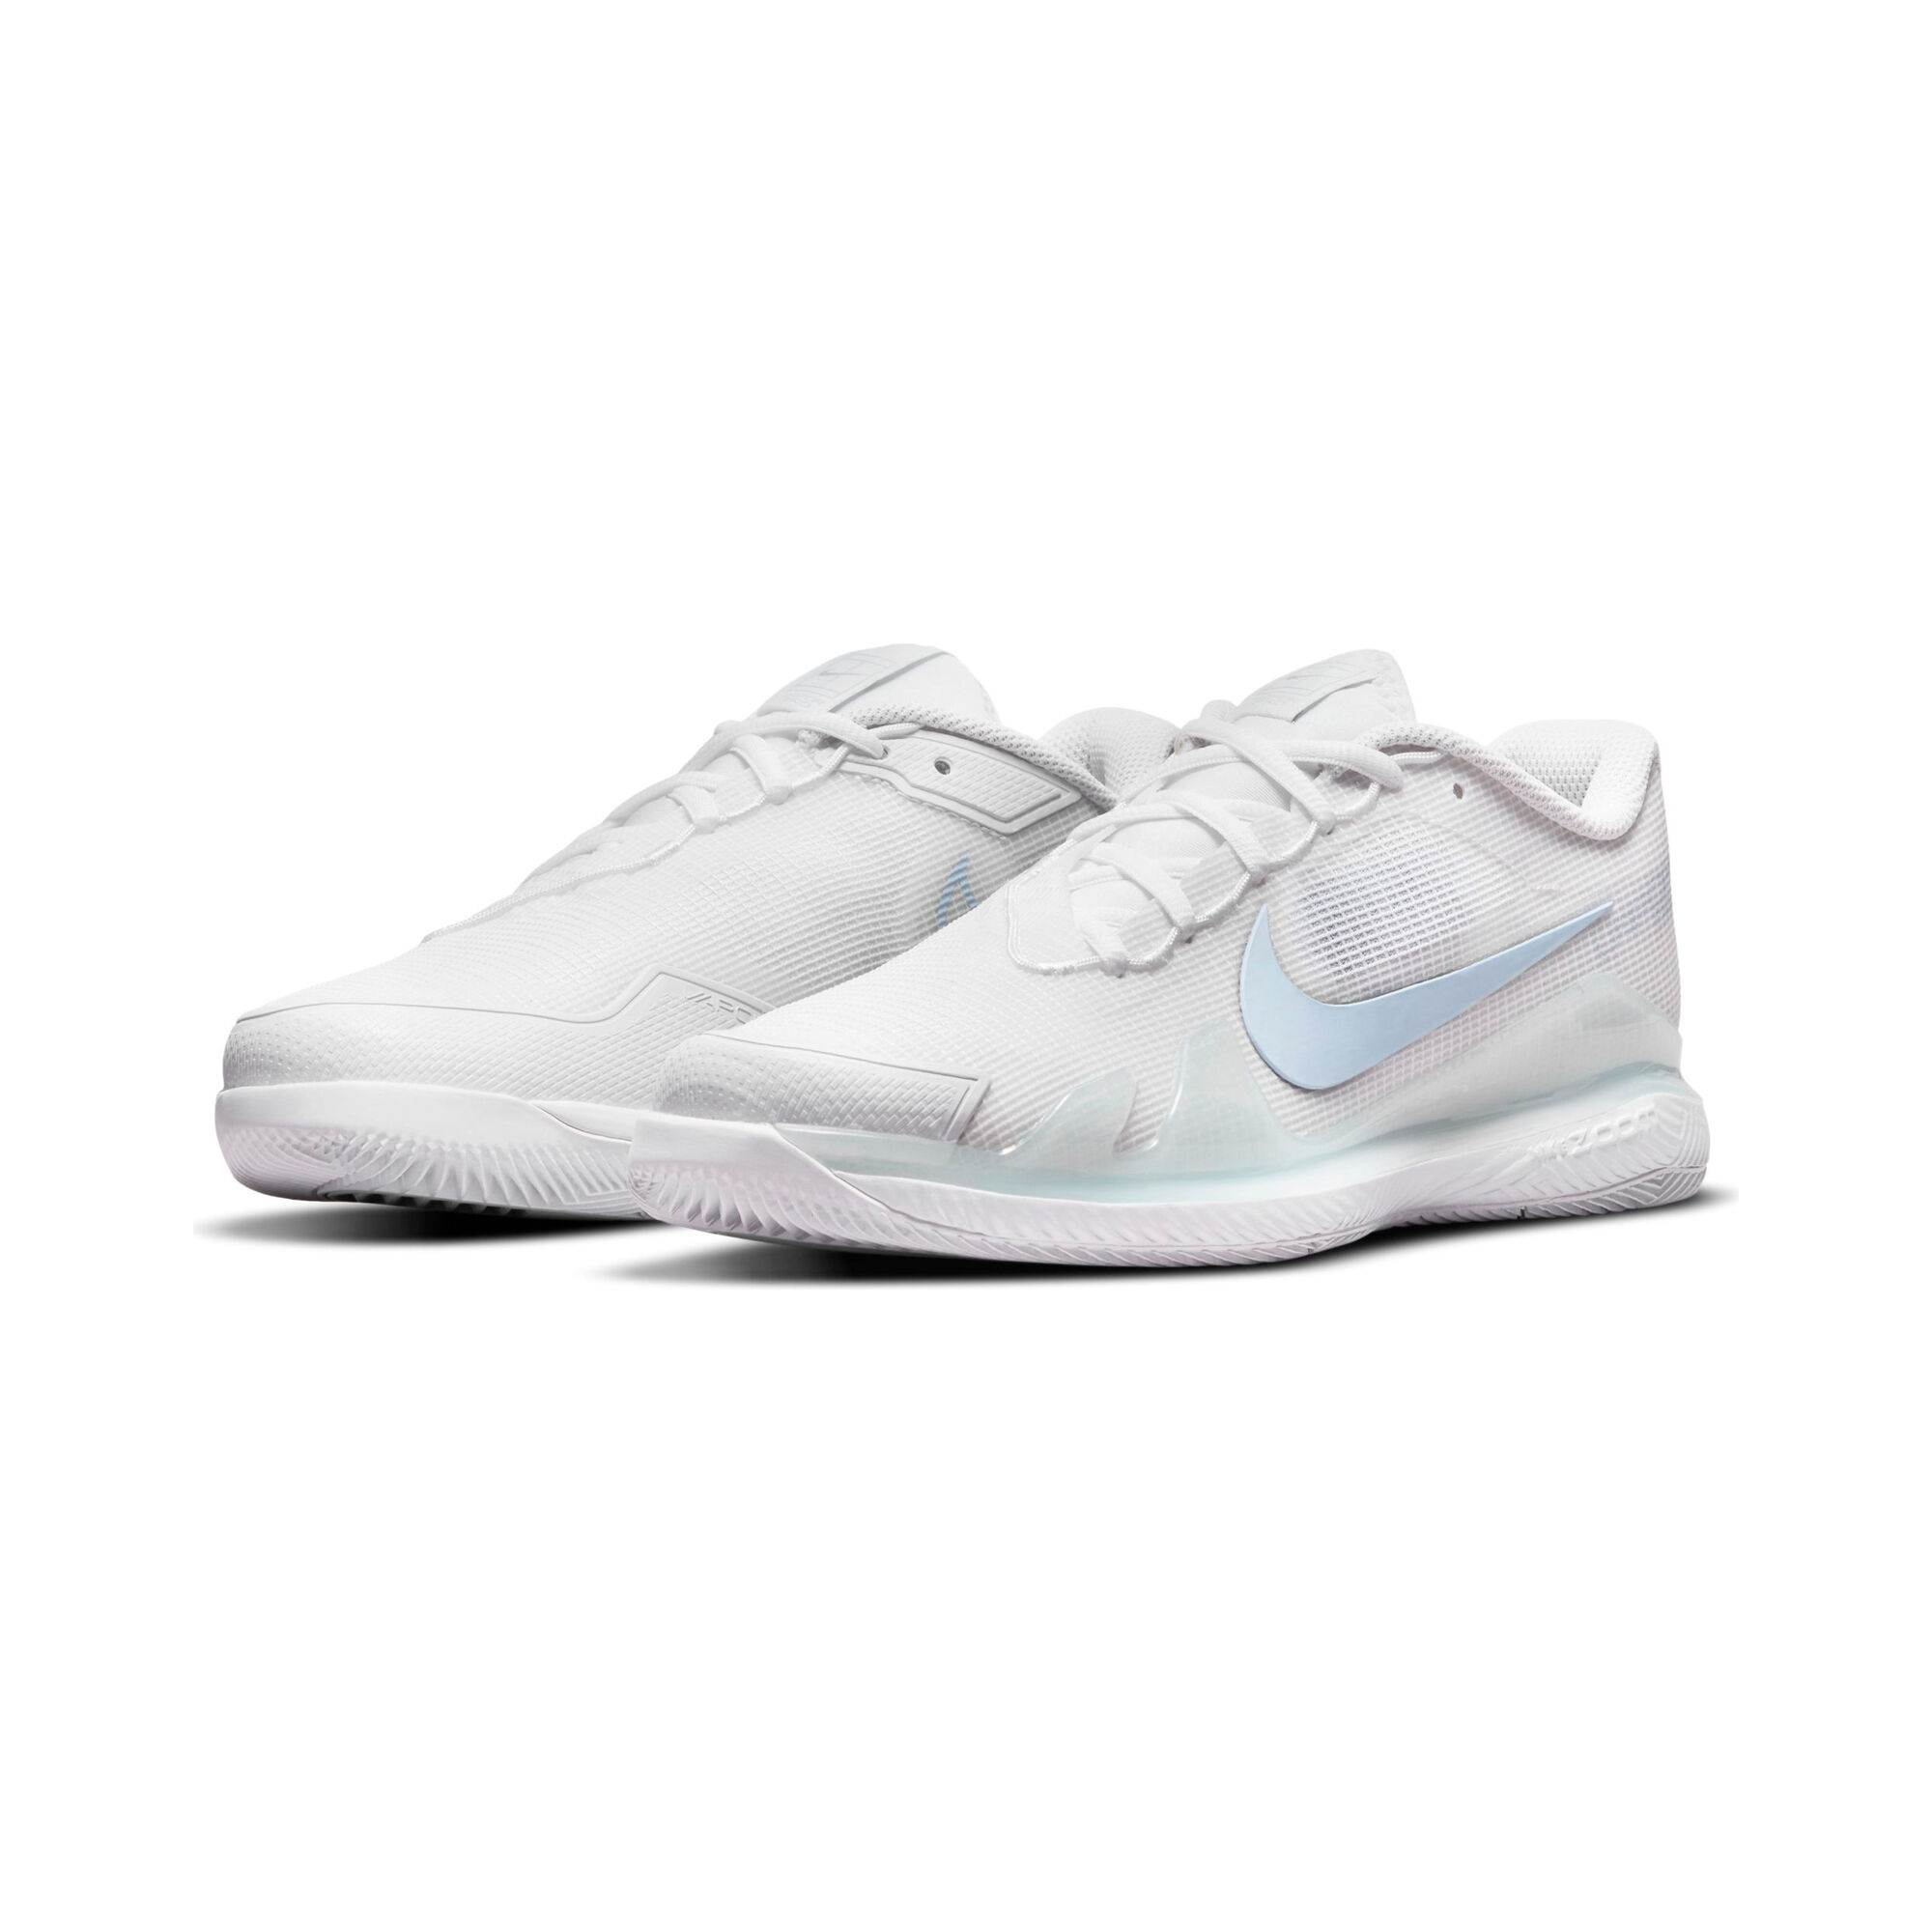 buy Nike Air Zoom Vapor Pro All Court Shoe Women - White, Light Blue ...